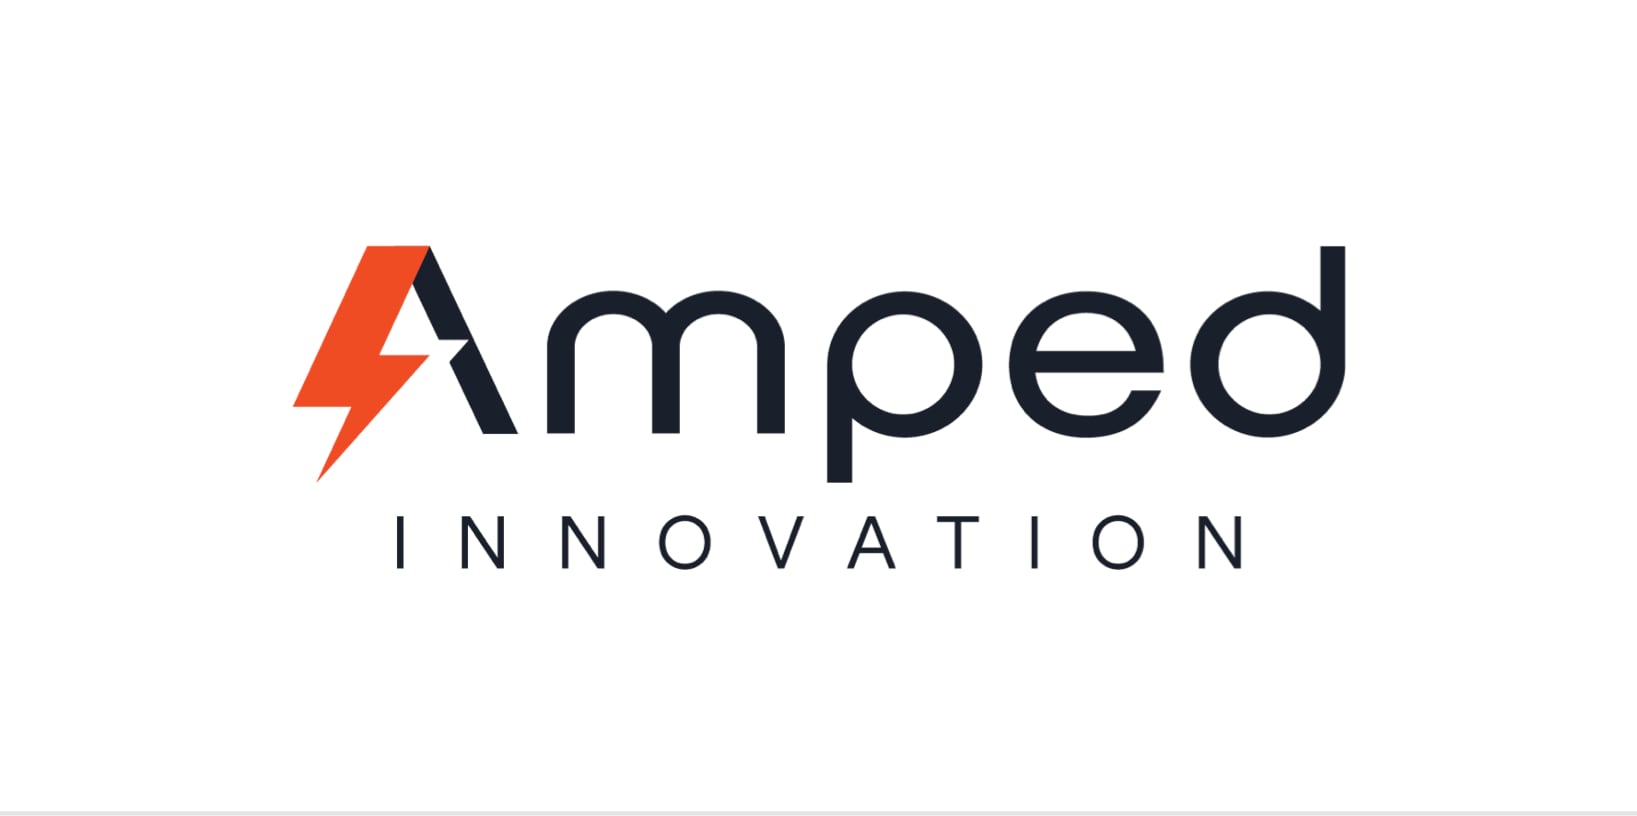 Amped Innovation logo